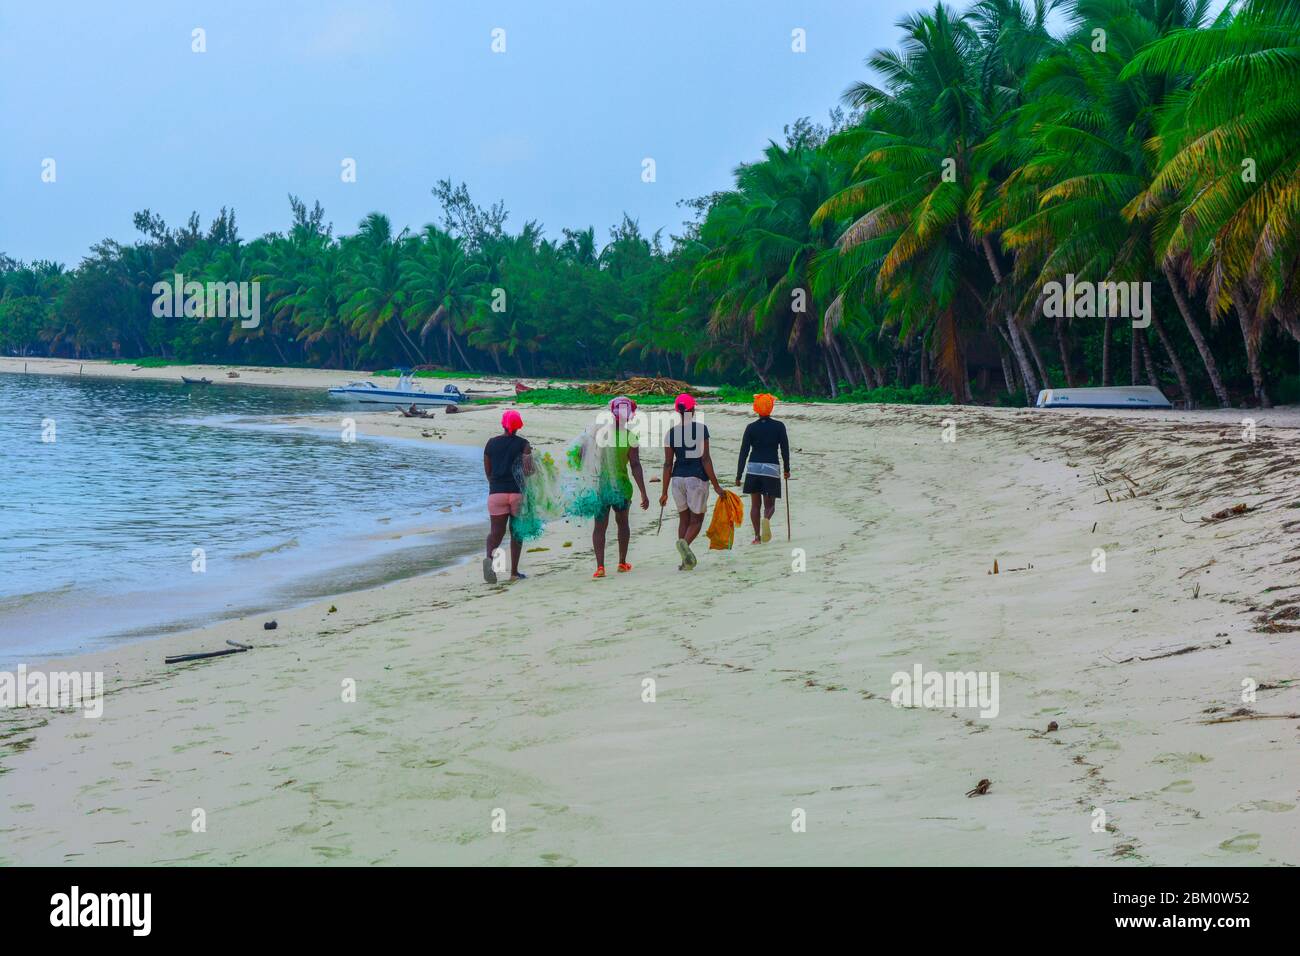 Cuatro mujeres africanas negras caminando en una fantástica playa con una larga línea de palmeras verdes. Pescadores malgaches con redes de pesca y sombreros coloridos Foto de stock